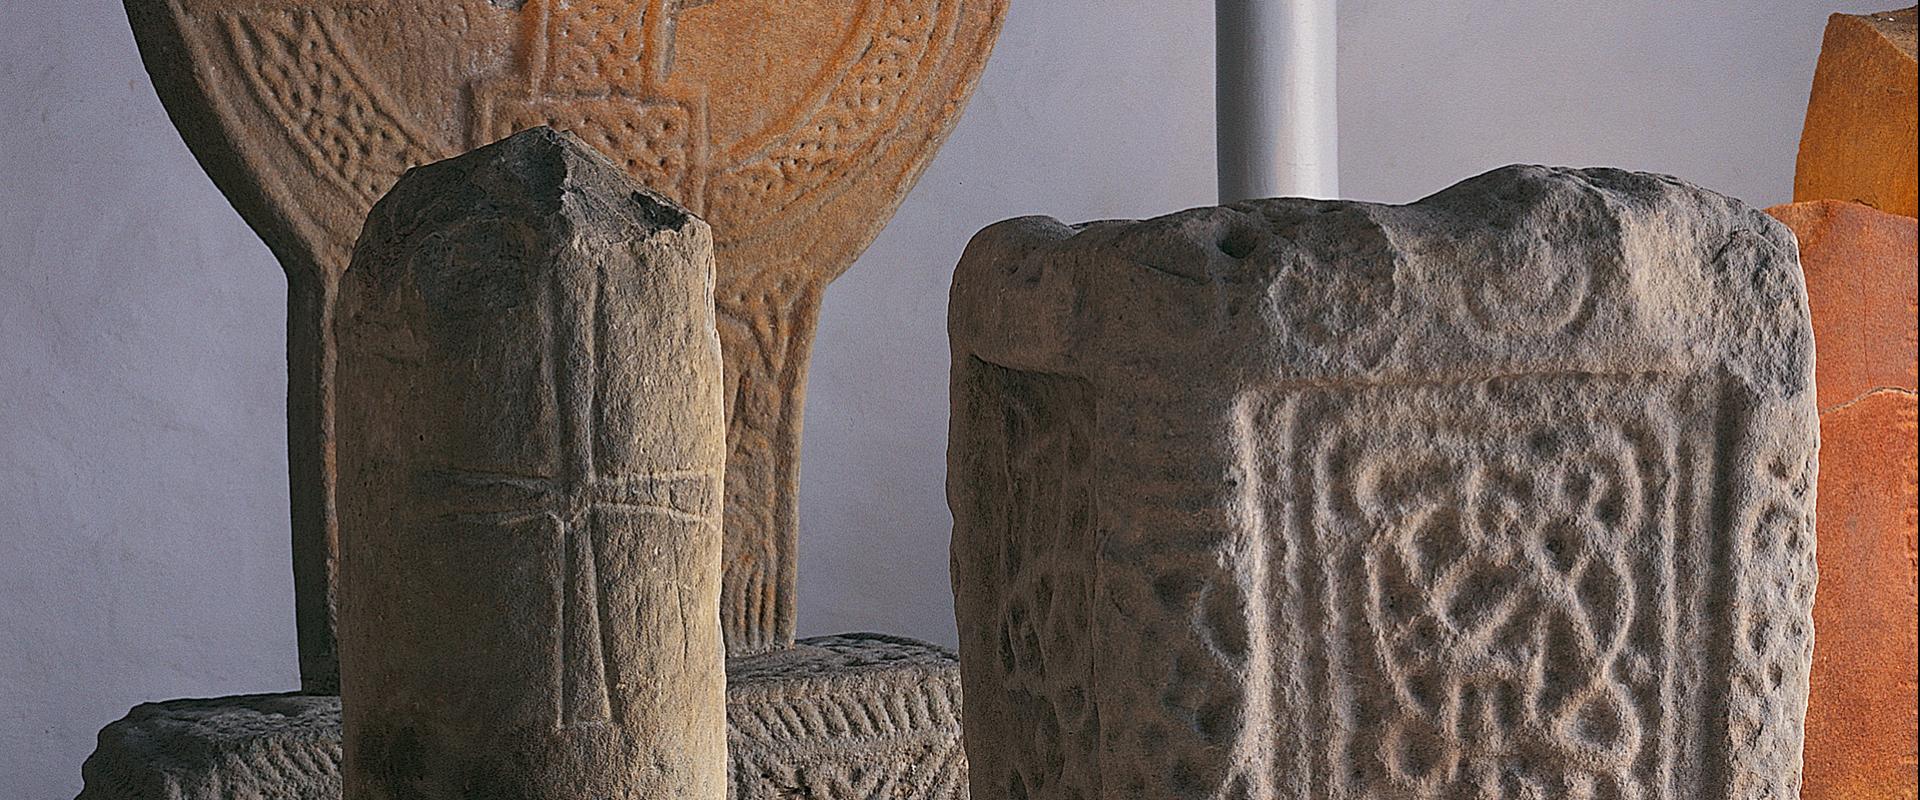  Amgueddfa Cerrig Margam/Margam Stones Museum